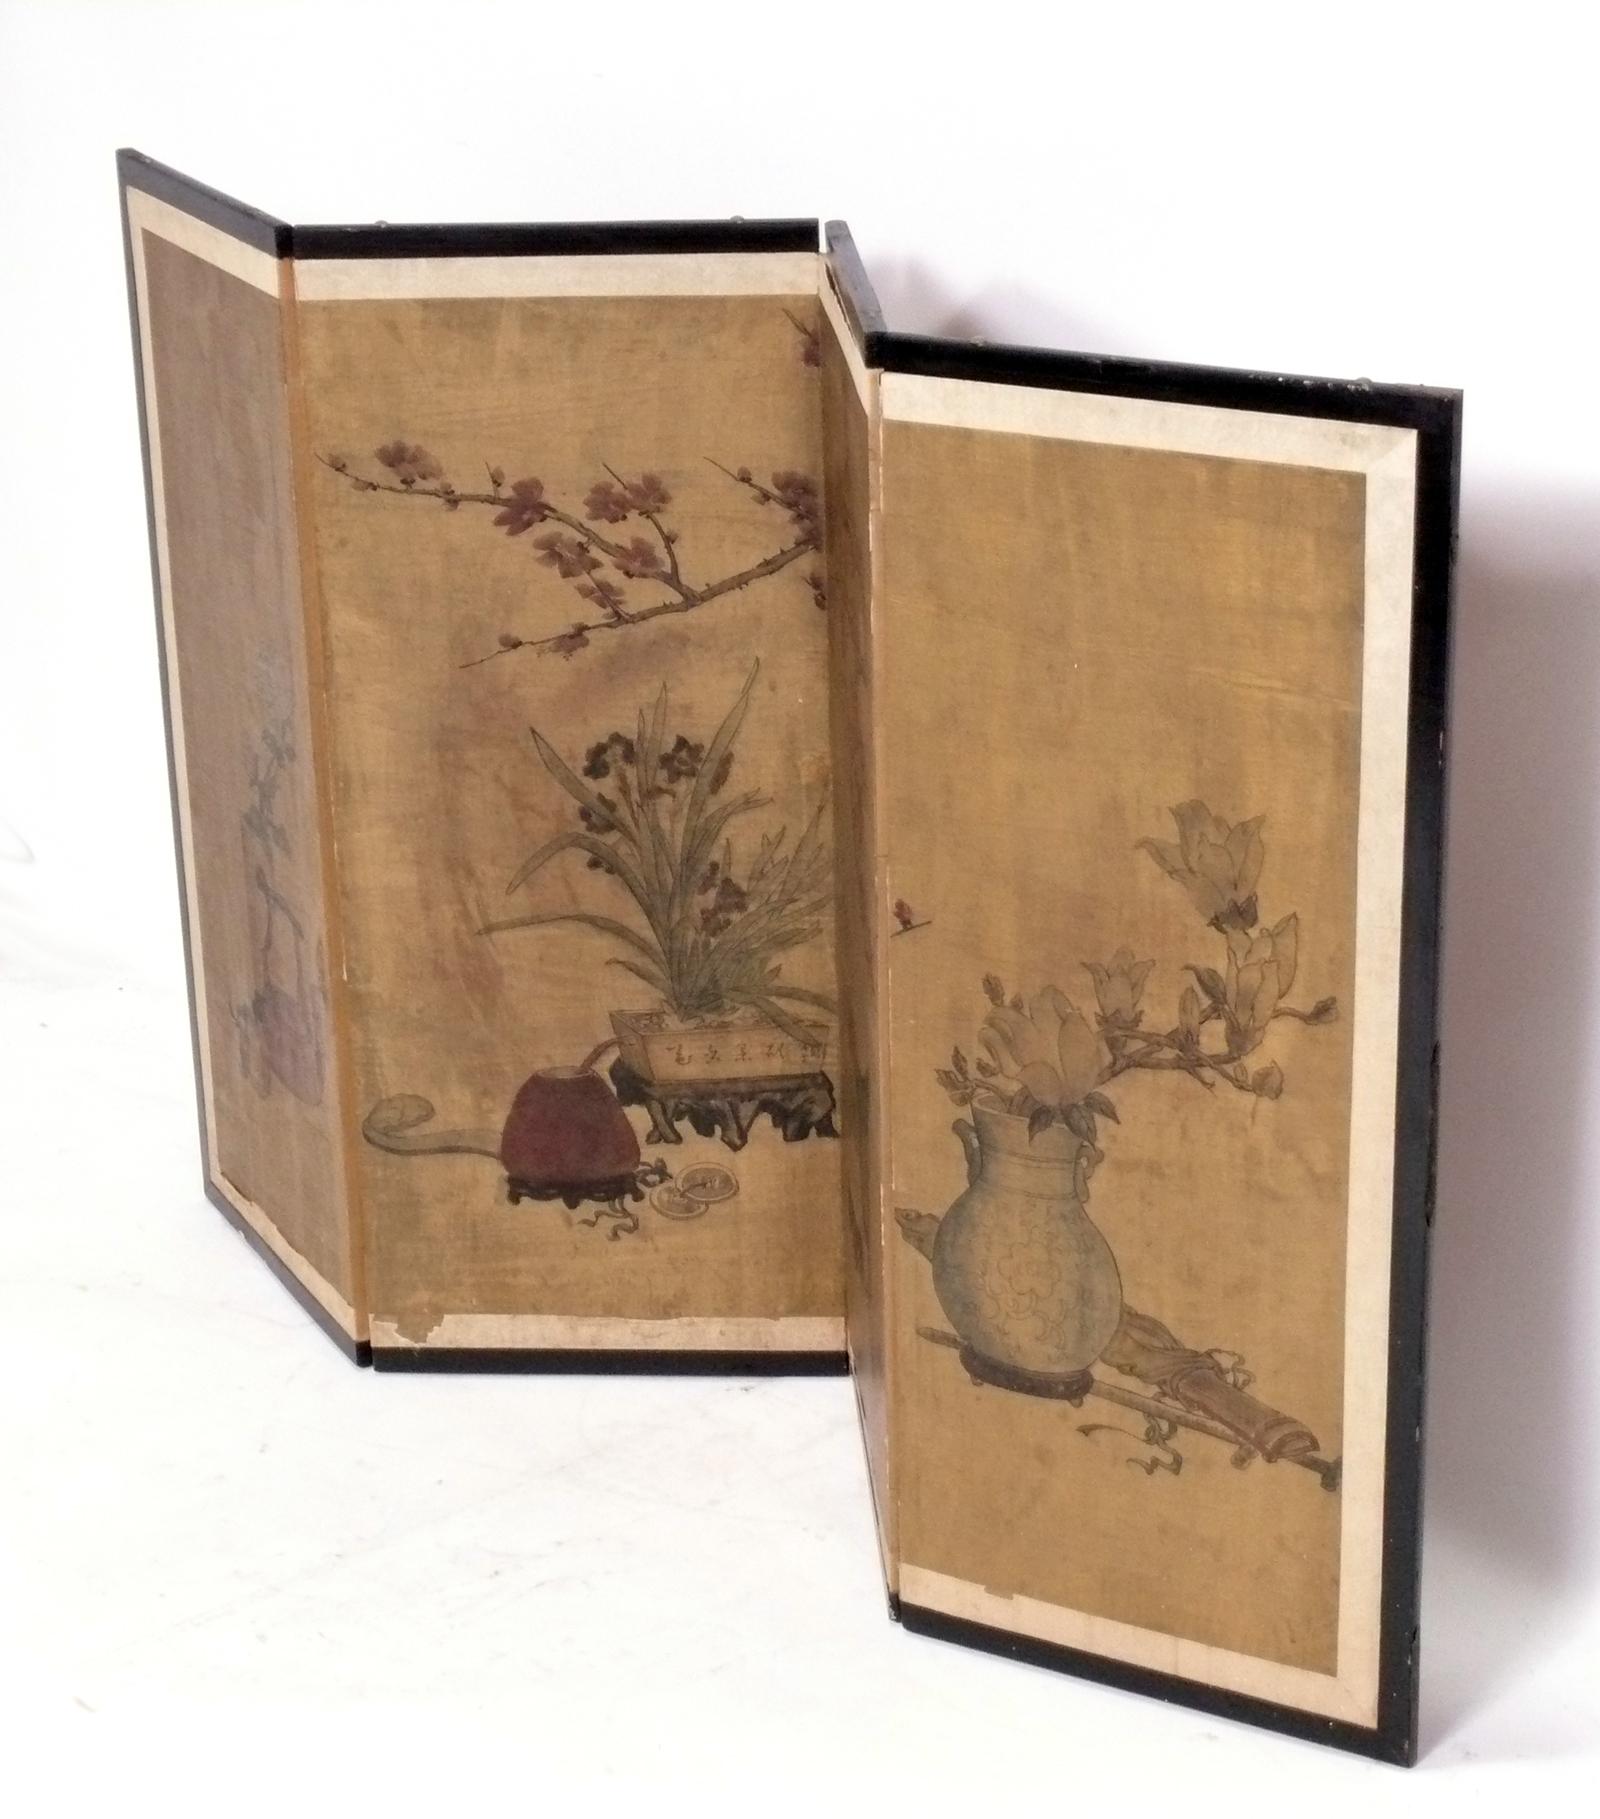 Paravent chinois peint à la main, Chine, vers les années 1950. Ce paravent présente une nature morte peinte à la main et peut être utilisé comme paravent de table, ou accroché au mur comme tableau ou décoration murale.